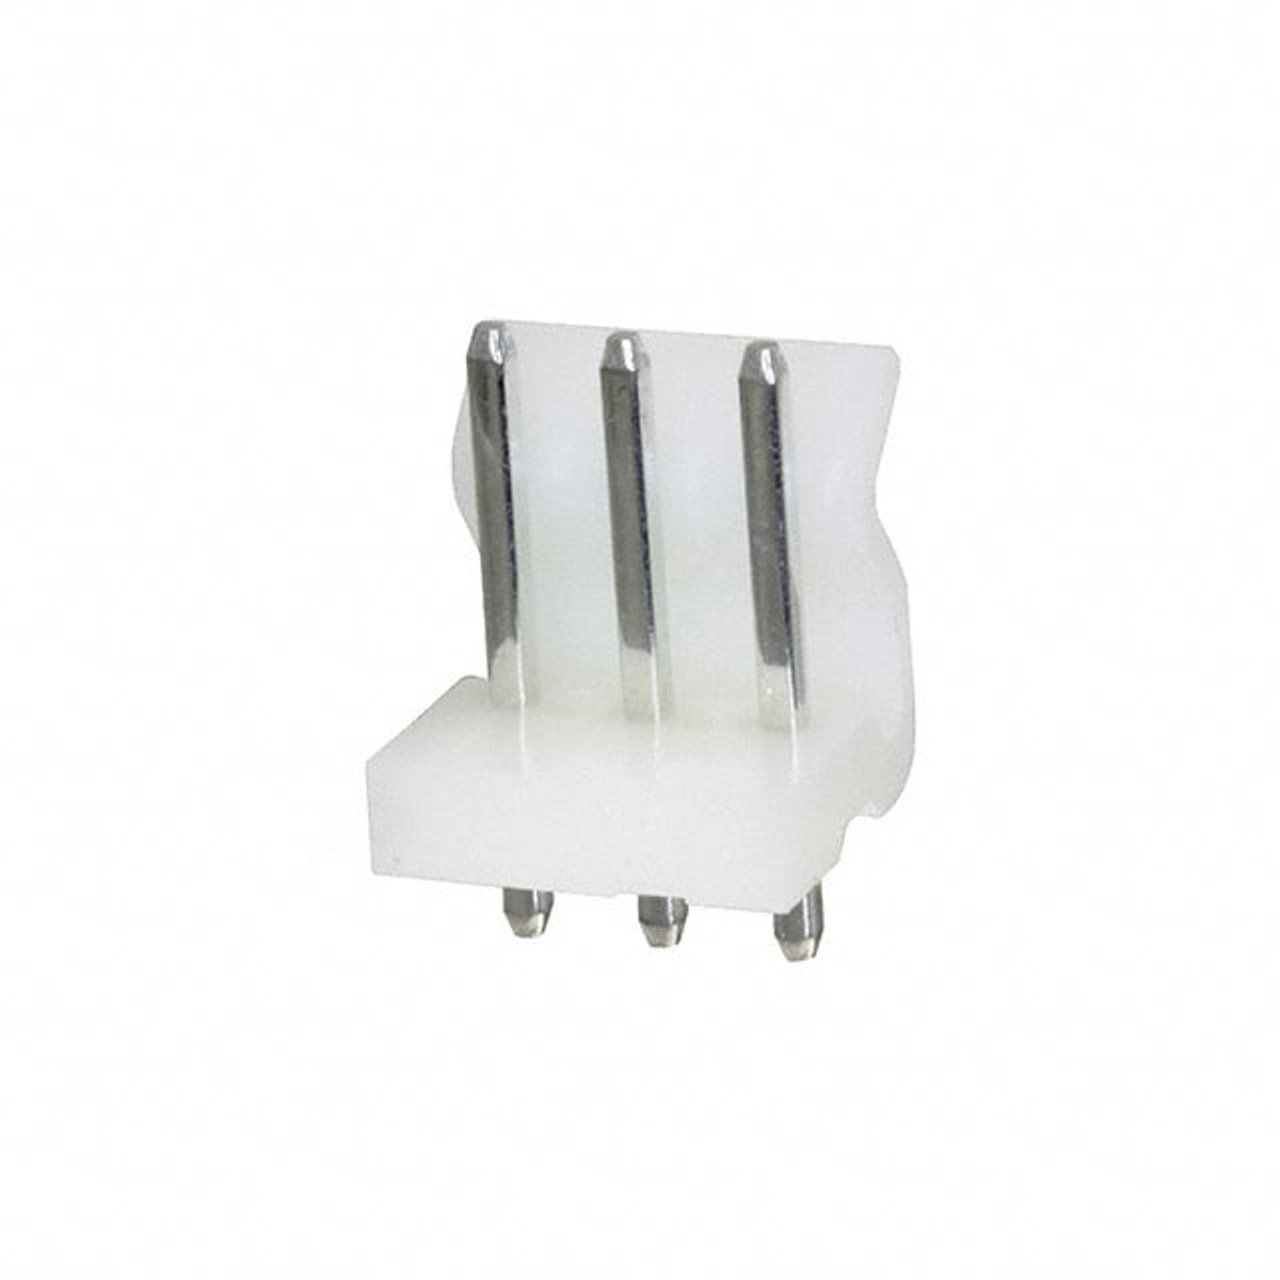 AdamTech LHB-03-SA1 Pin Headers & Sockets